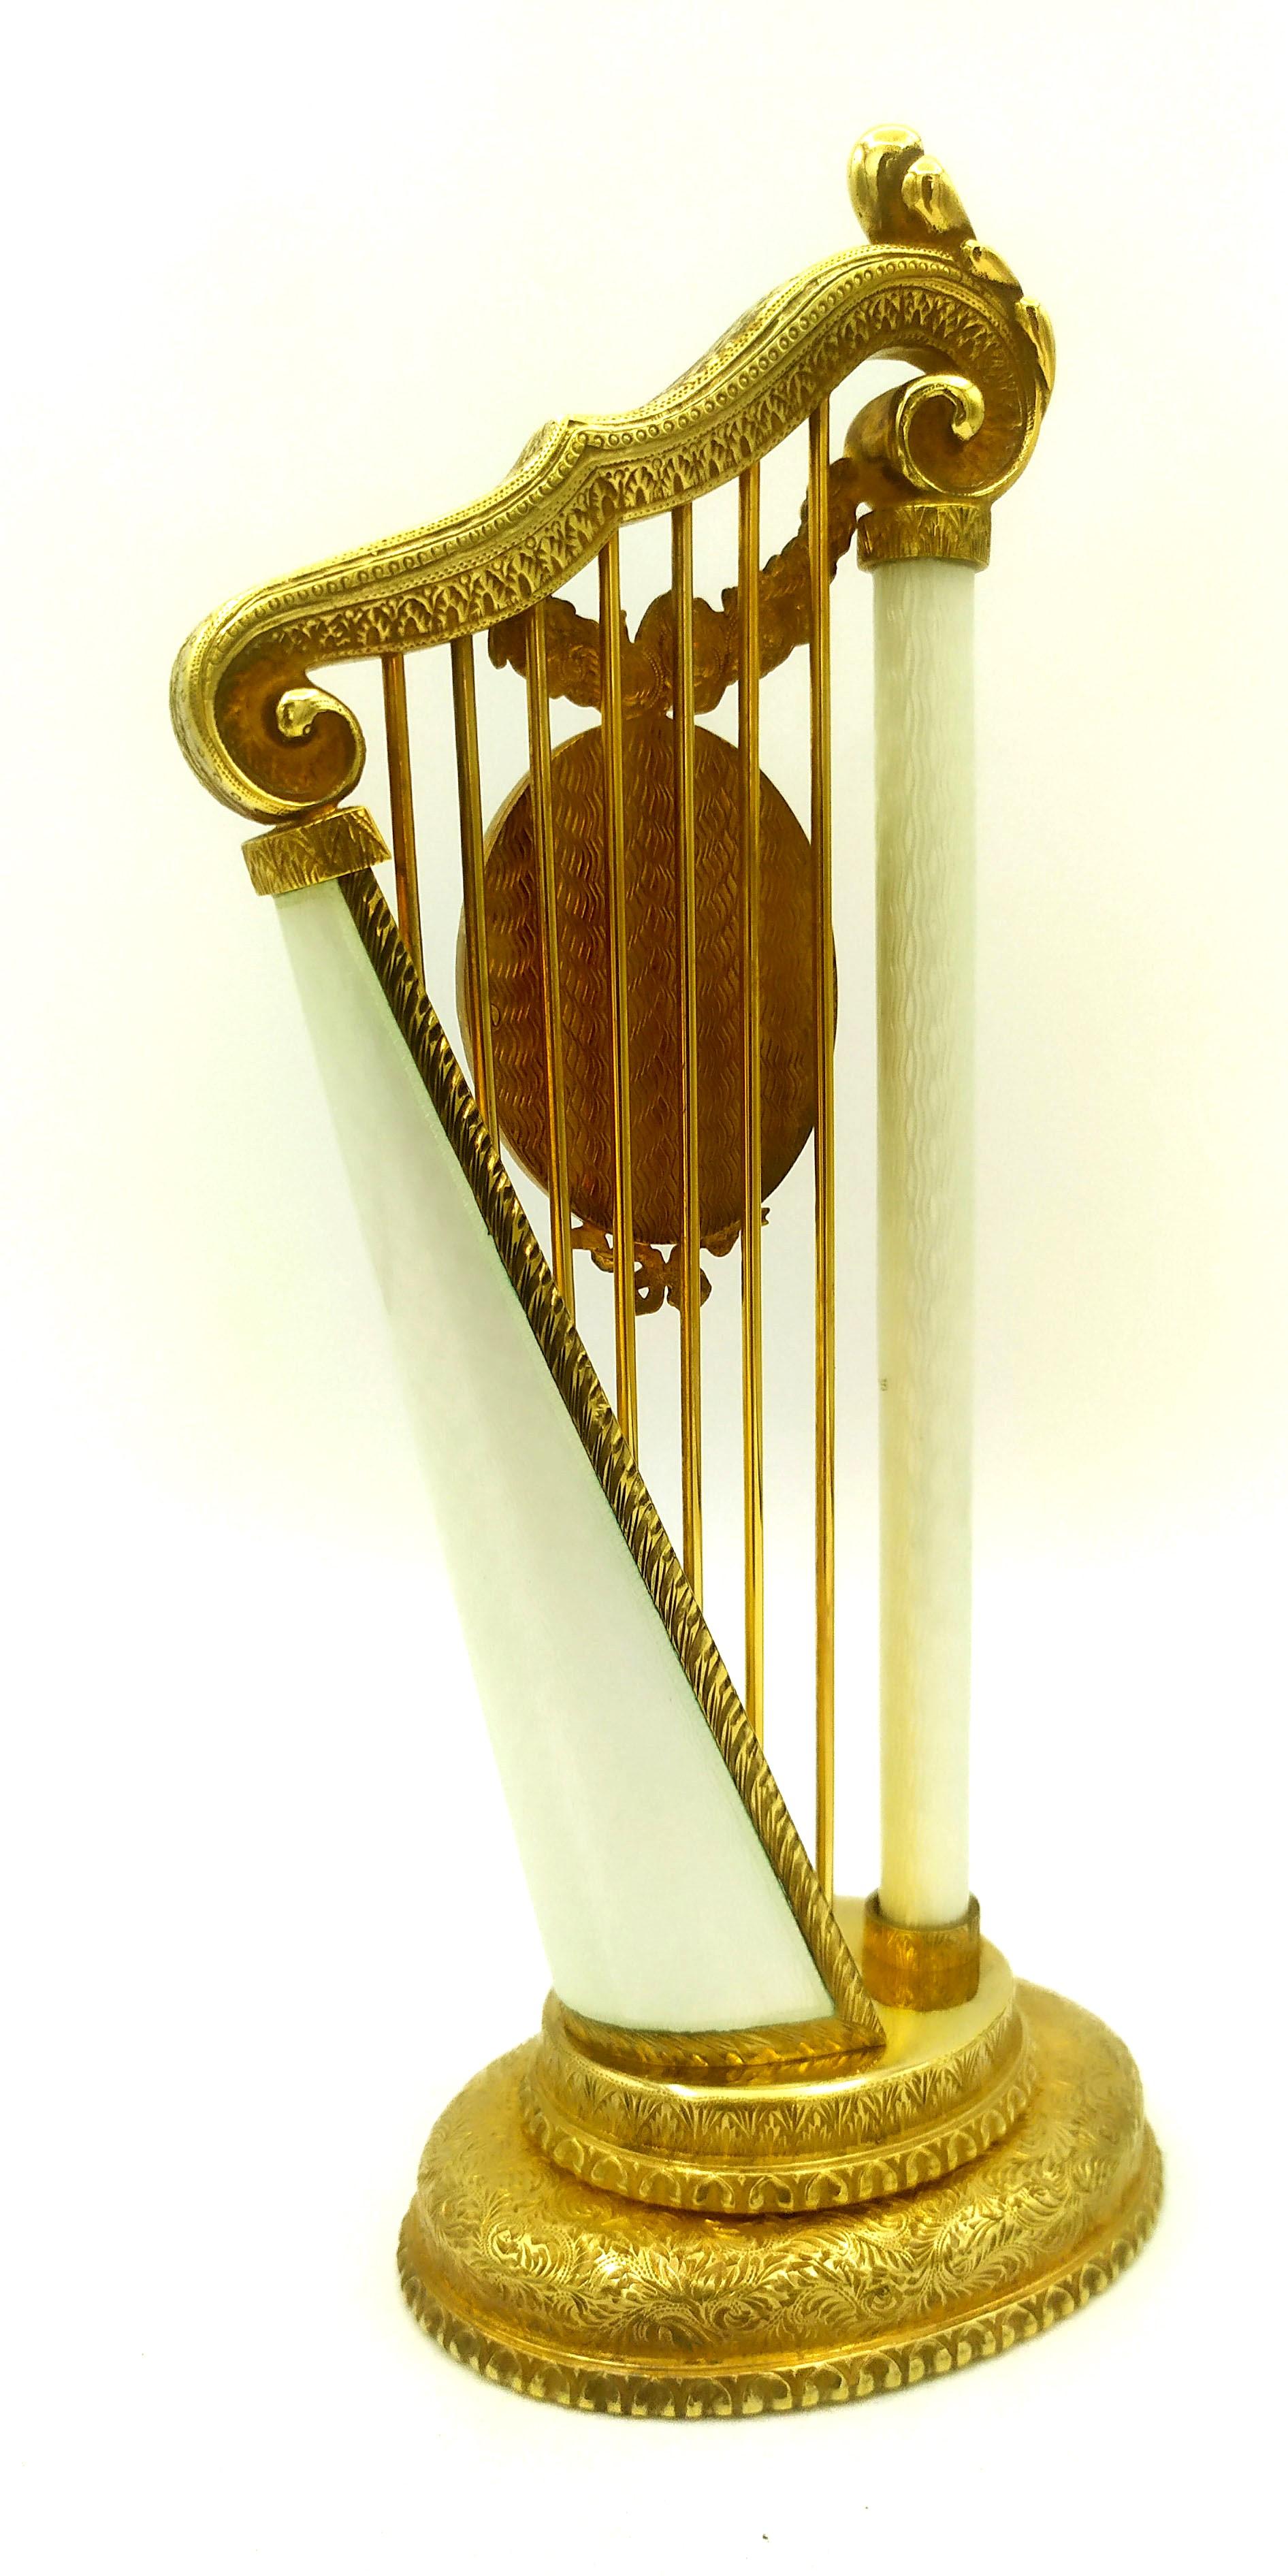 Cadre photo ovale inséré dans un objet en forme de harpe, en argent 925/1000 plaqué or avec émaux cuits translucides sur guilloché inspiré d'un modèle créé par Peters Carl Fabergè dans le style de la fin de l'Empire russe. Dimensions : base ovale